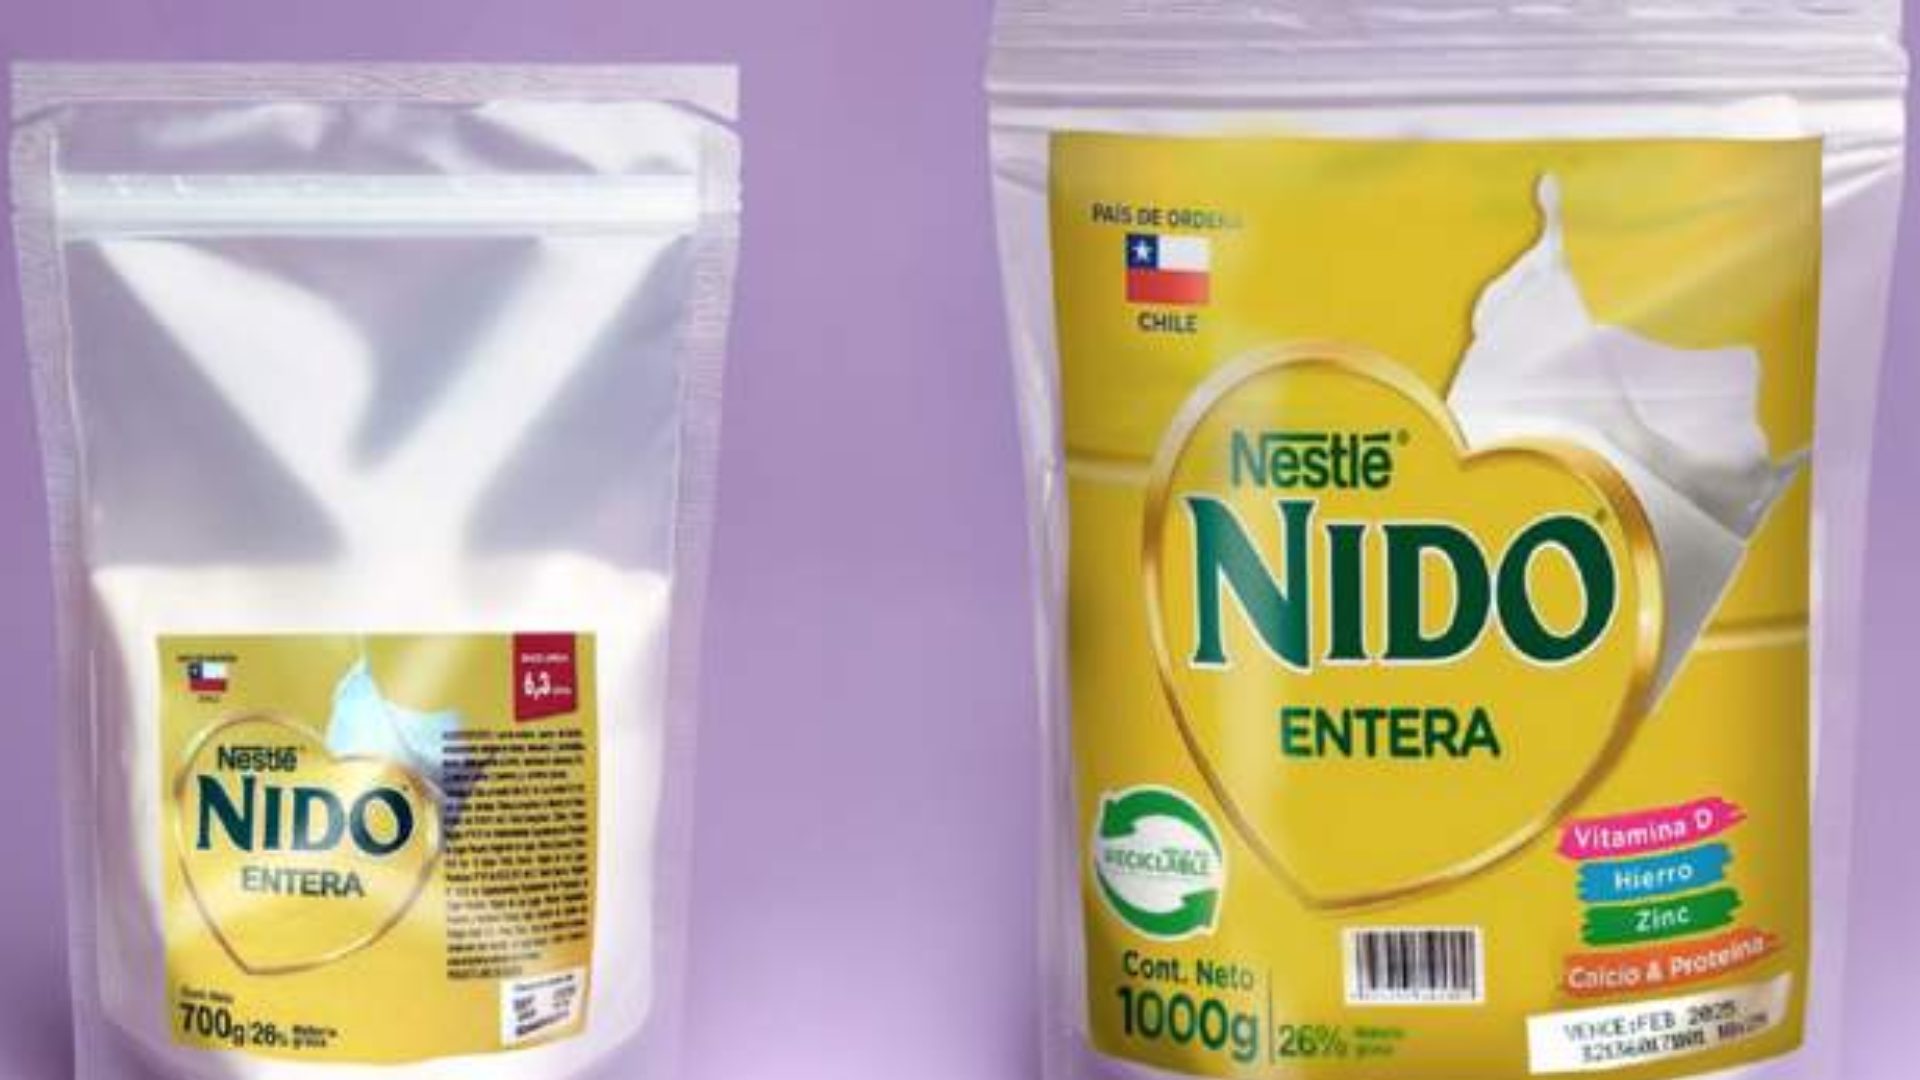 Sernac alerta sobre leche Nido falsificada en ferias y minimarkets